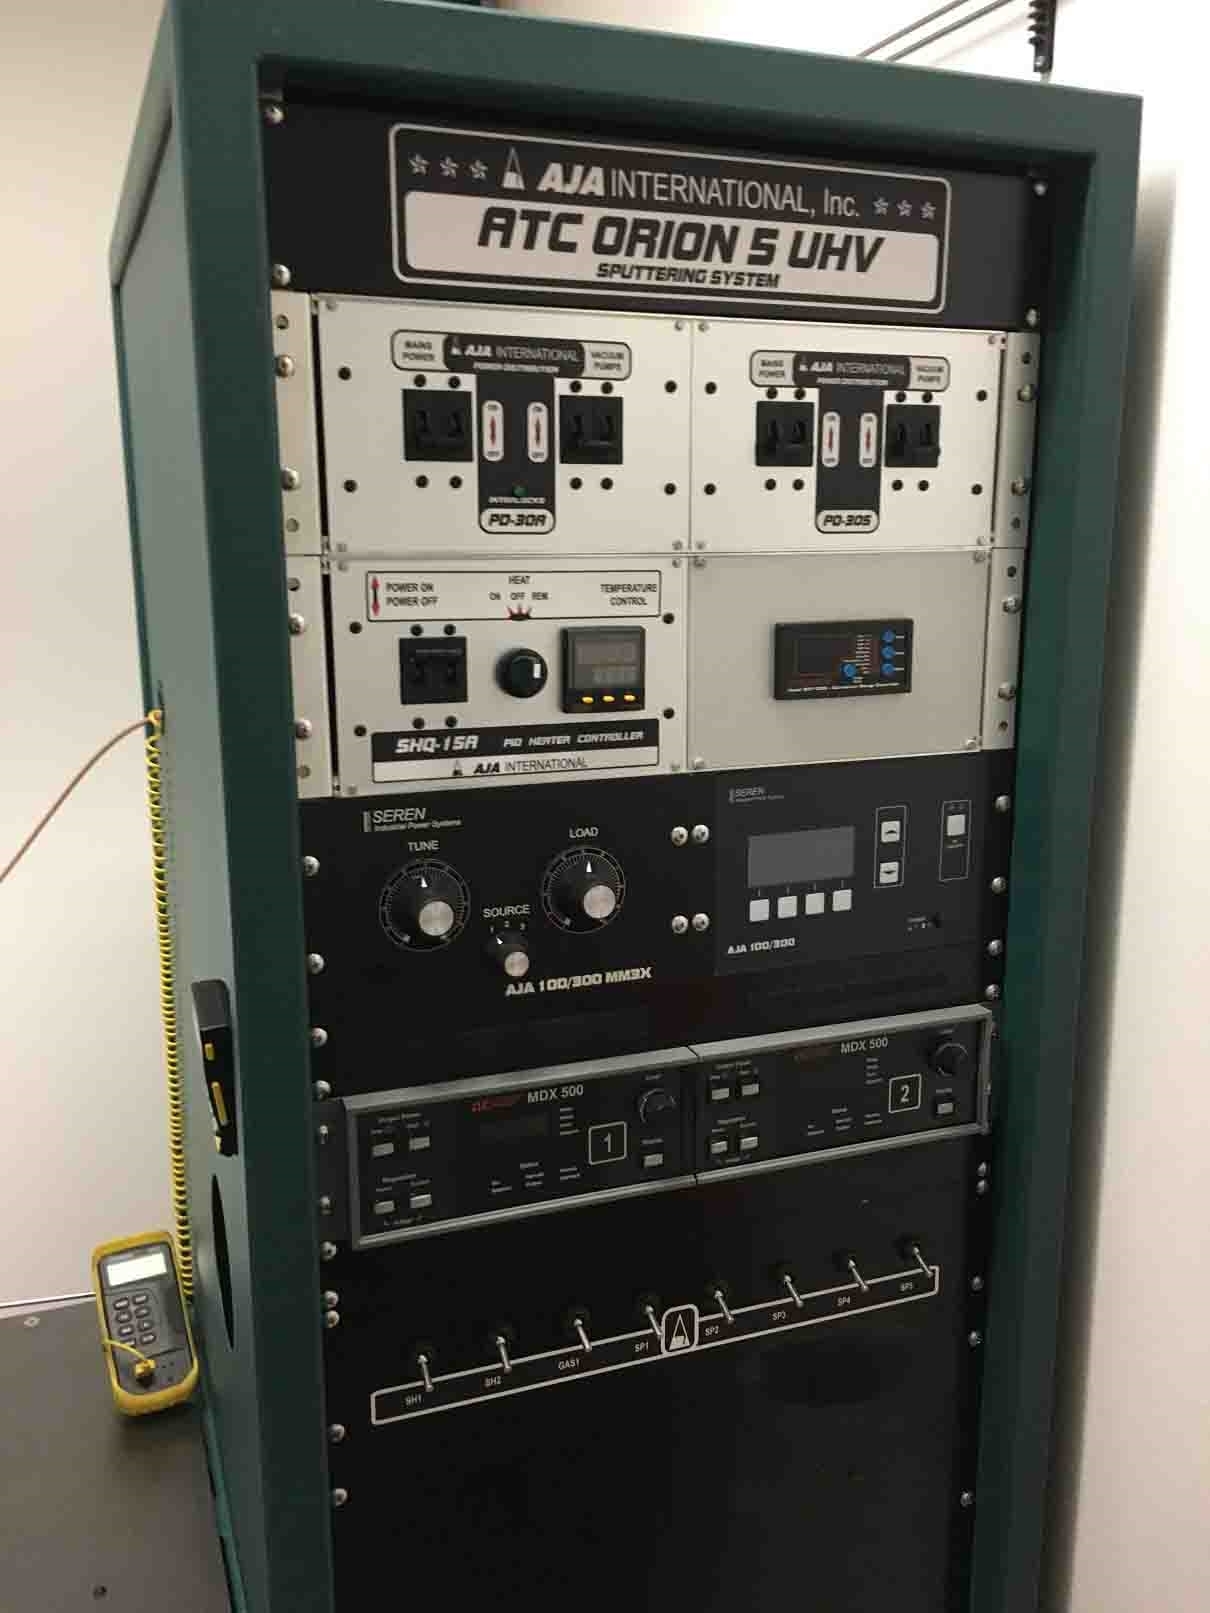 图为 已使用的 AJA ATC Orion 5 UHV 待售